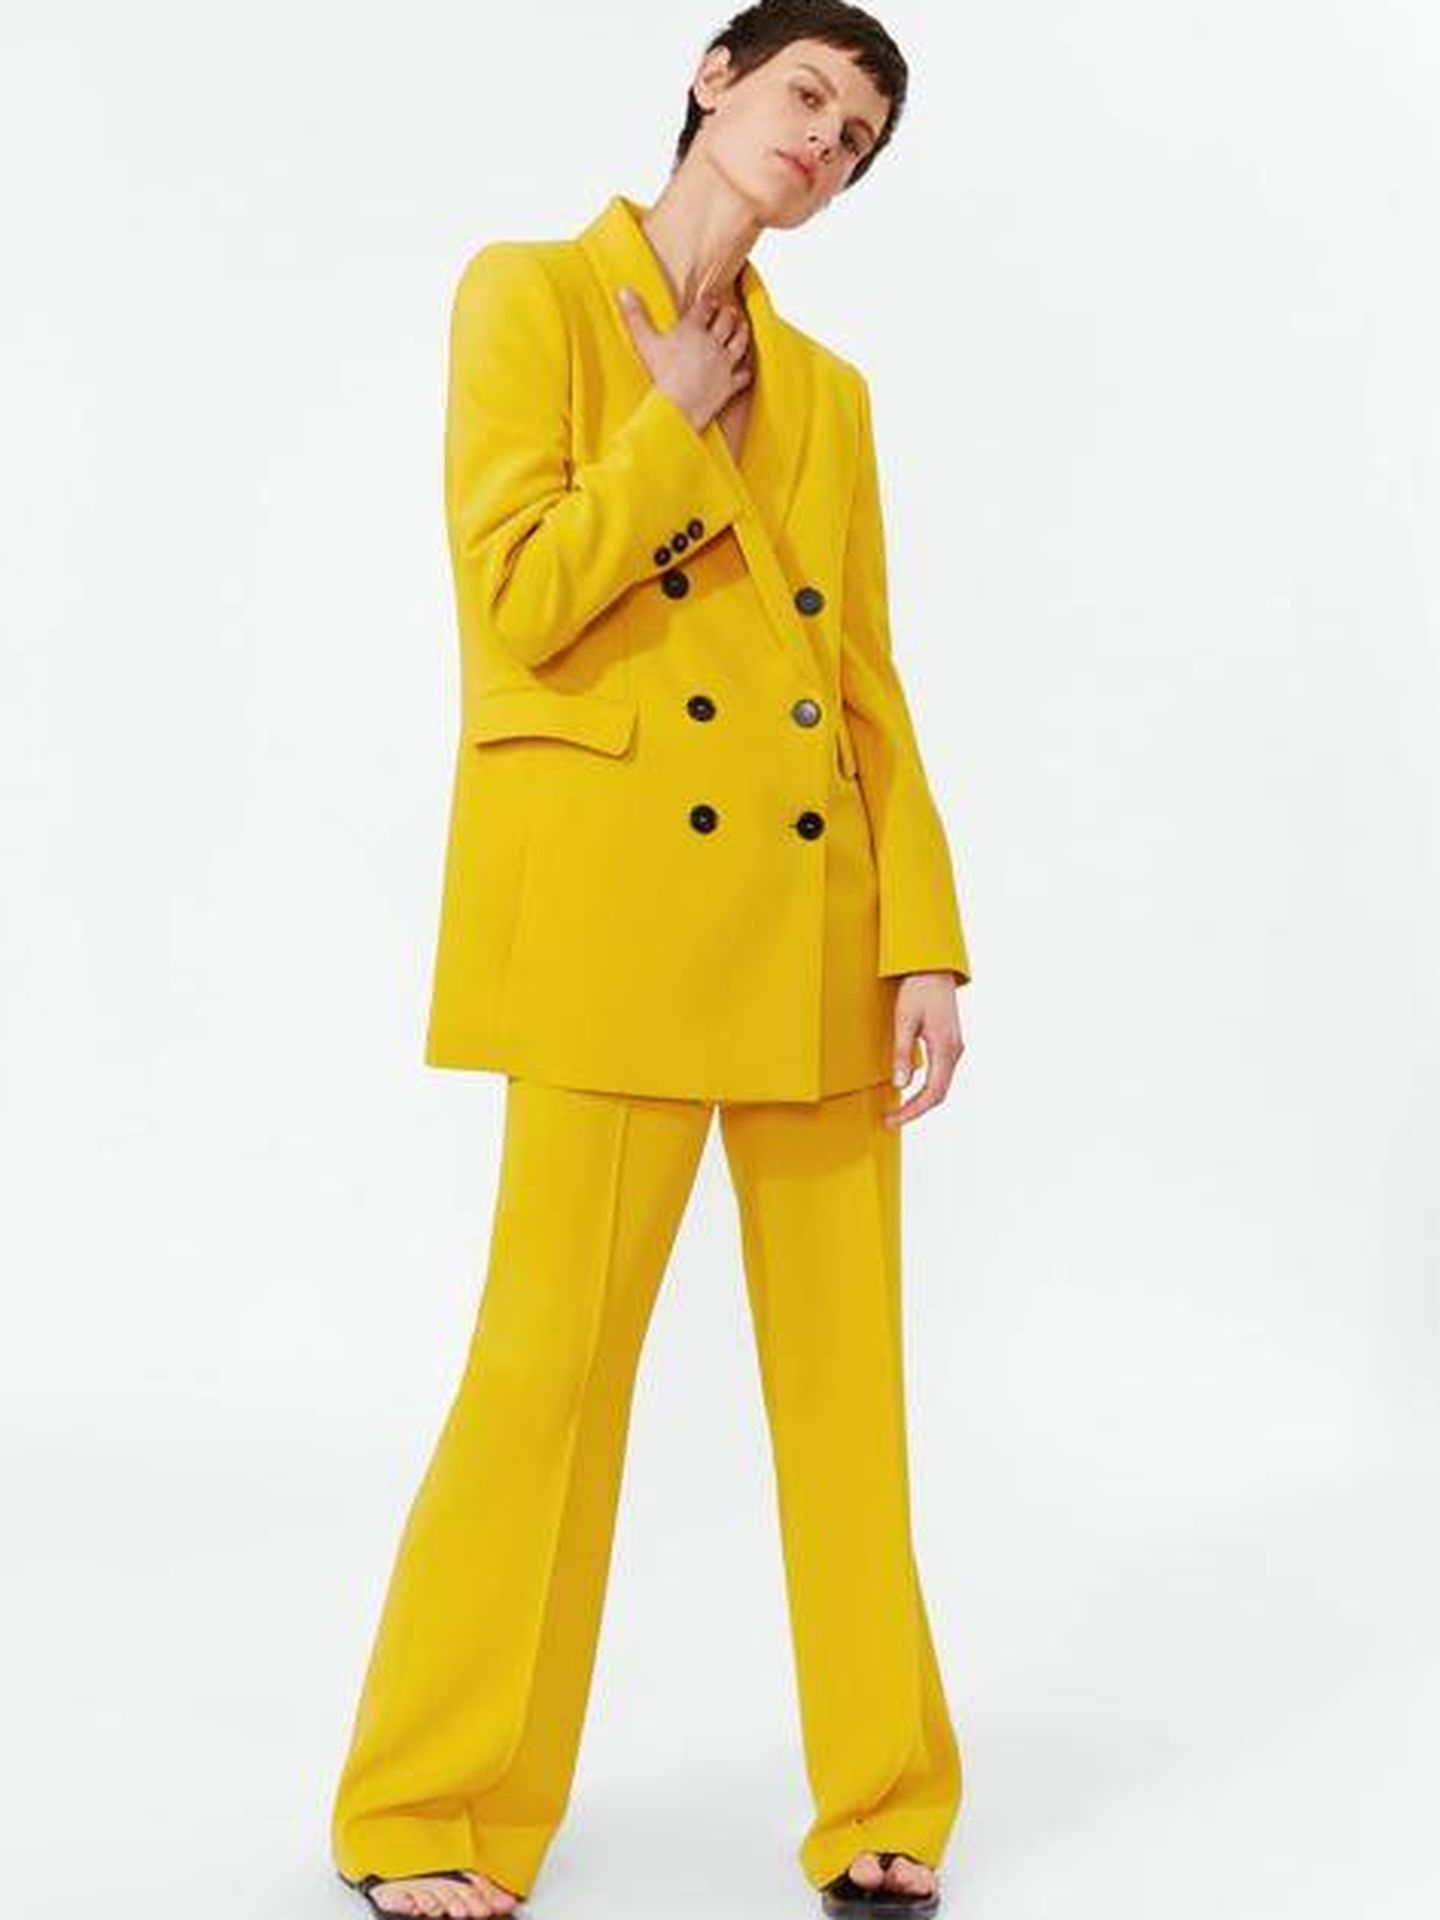 El traje amarillo de Zara. (Cortesía)